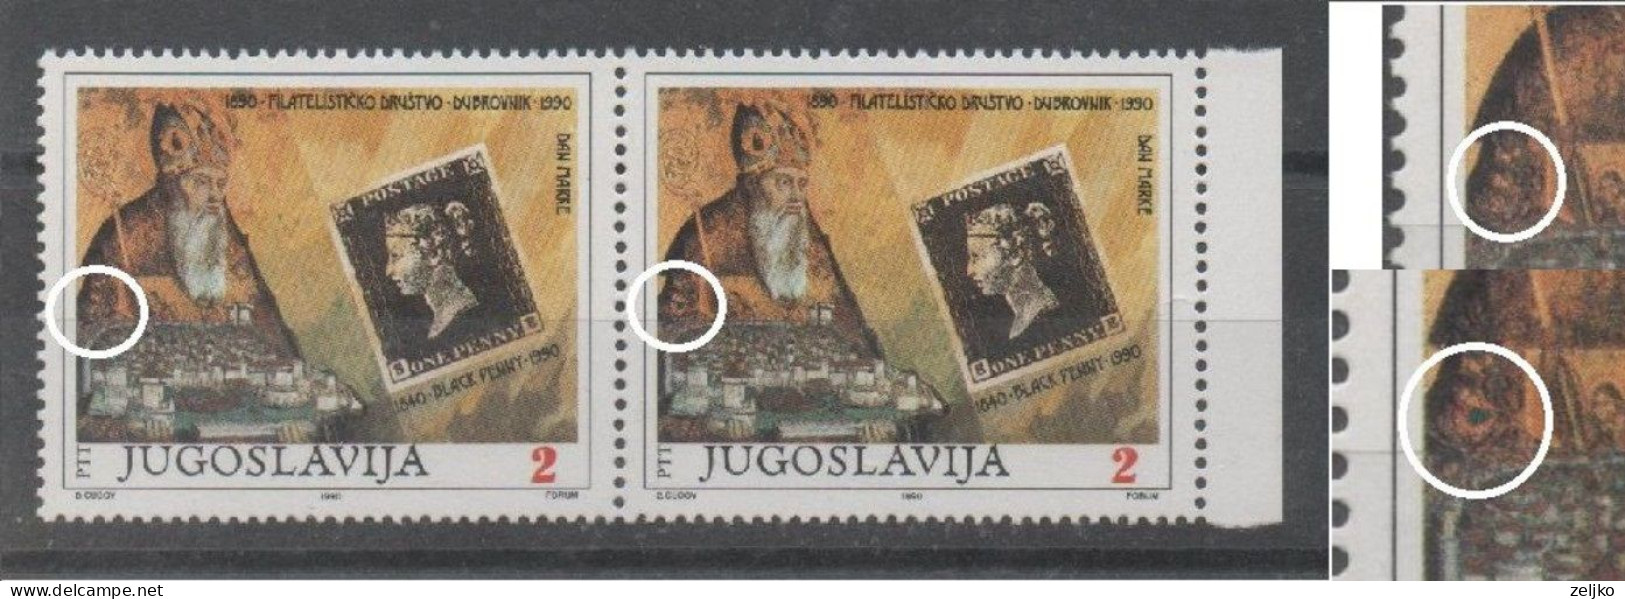 Yugoslavia, Error, MNH, 1990, Michel 2451,  Green Spot Under The Shoulder - Sin Dentar, Pruebas De Impresión Y Variedades